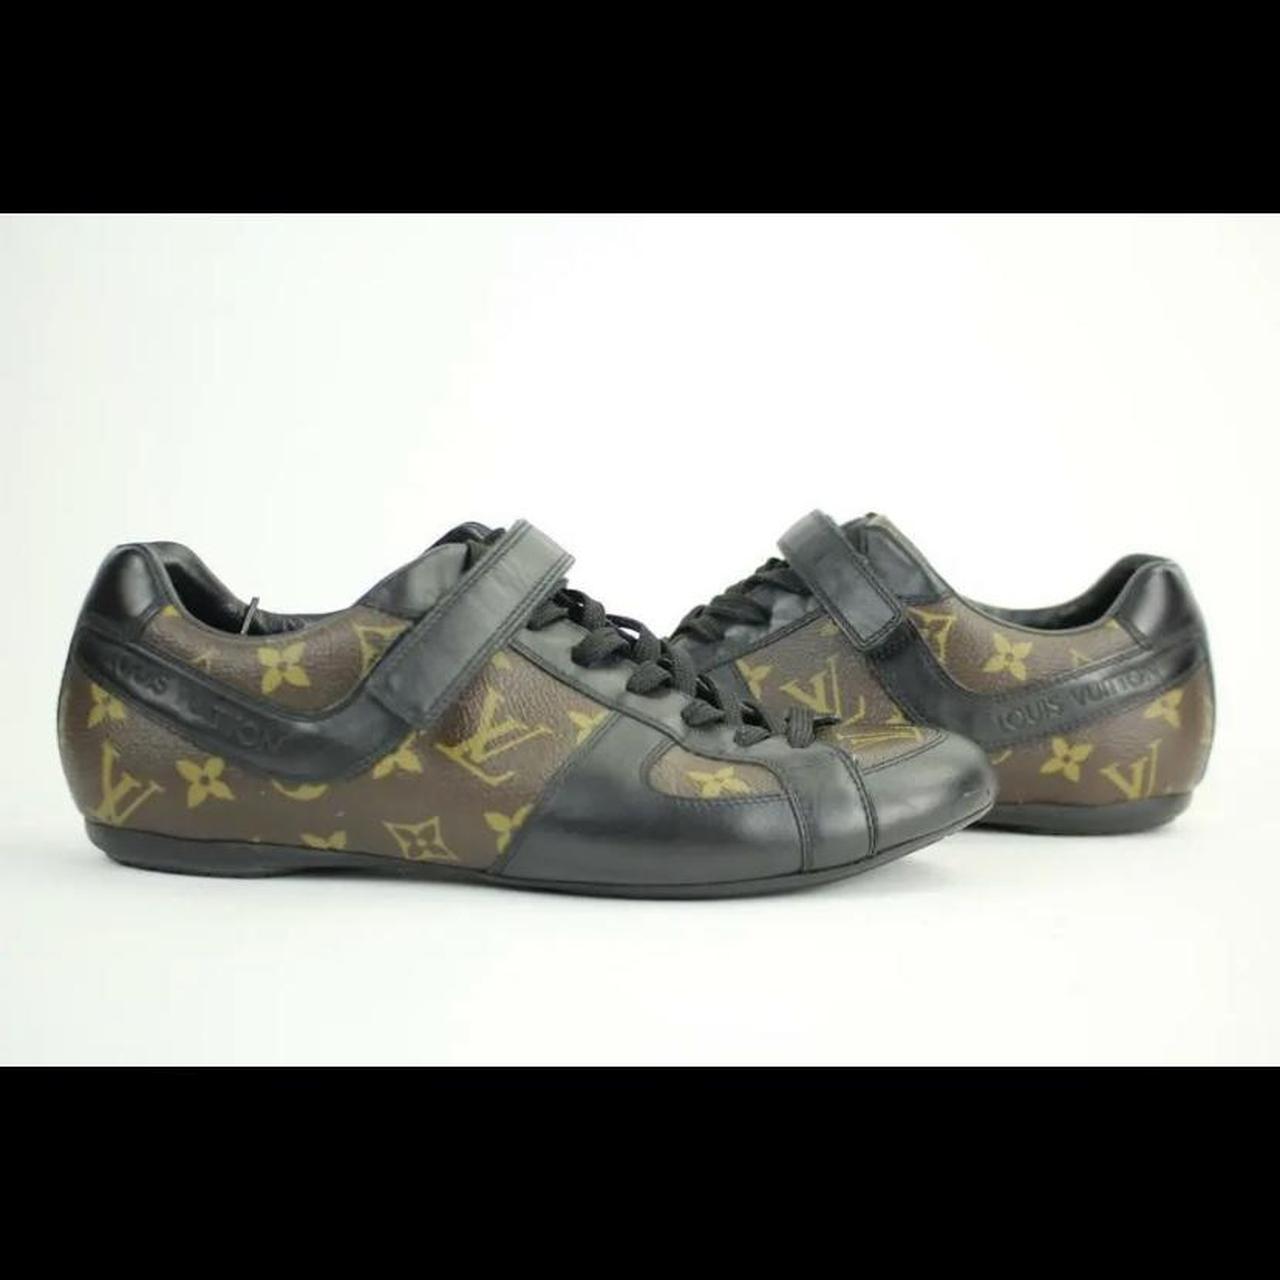 Louis Vuitton shoes - Depop